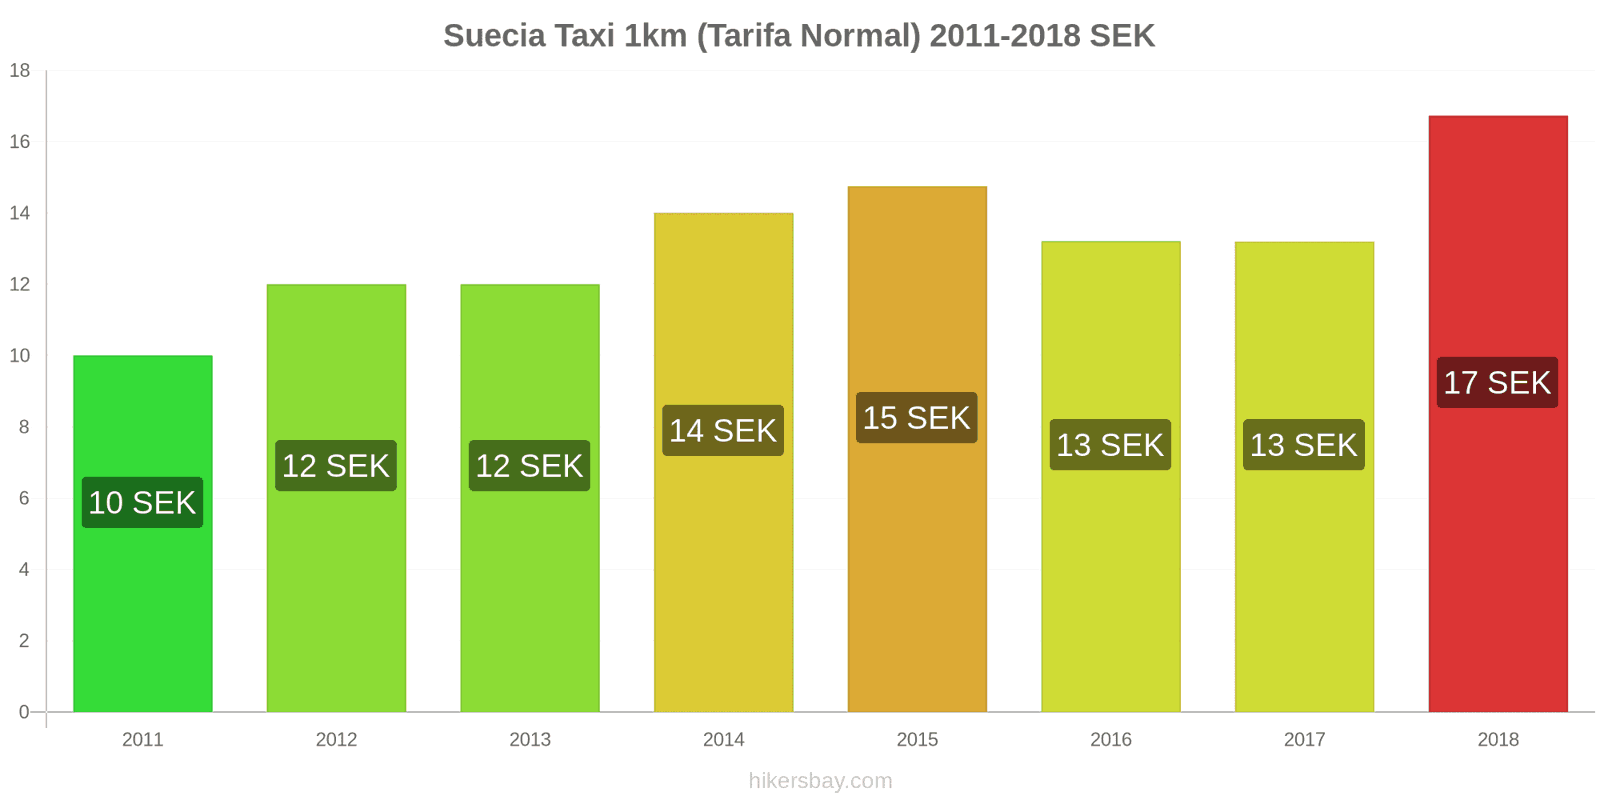 Suecia cambios de precios Taxi 1km (tarifa normal) hikersbay.com